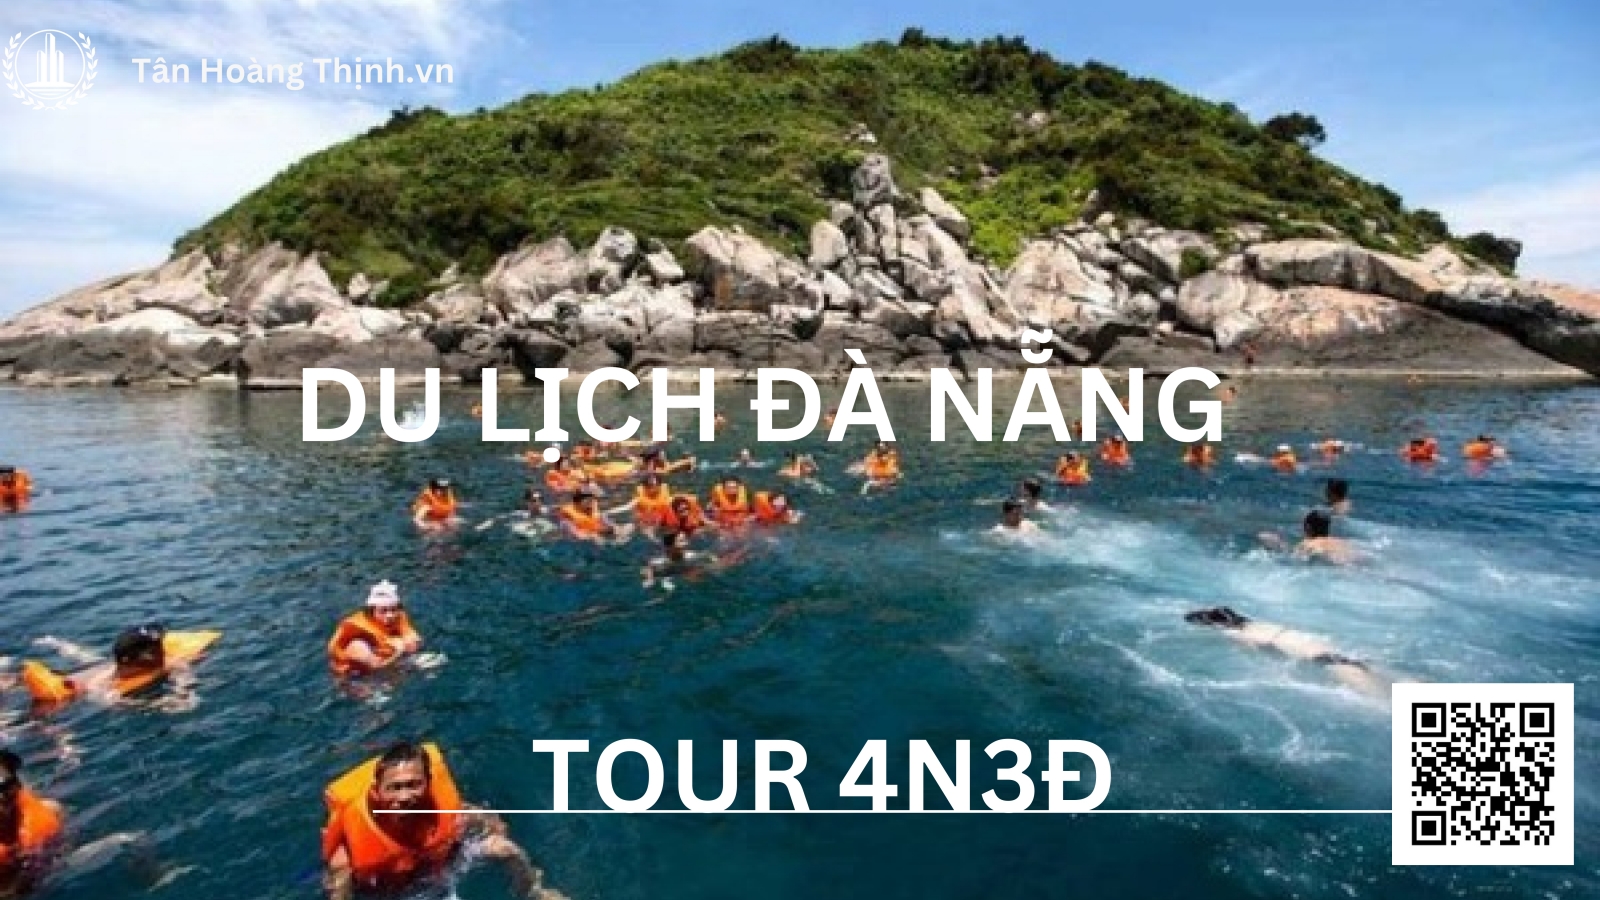 Du lịch Đà Nẵng tour 4n3đ phong phú hấp dẫn